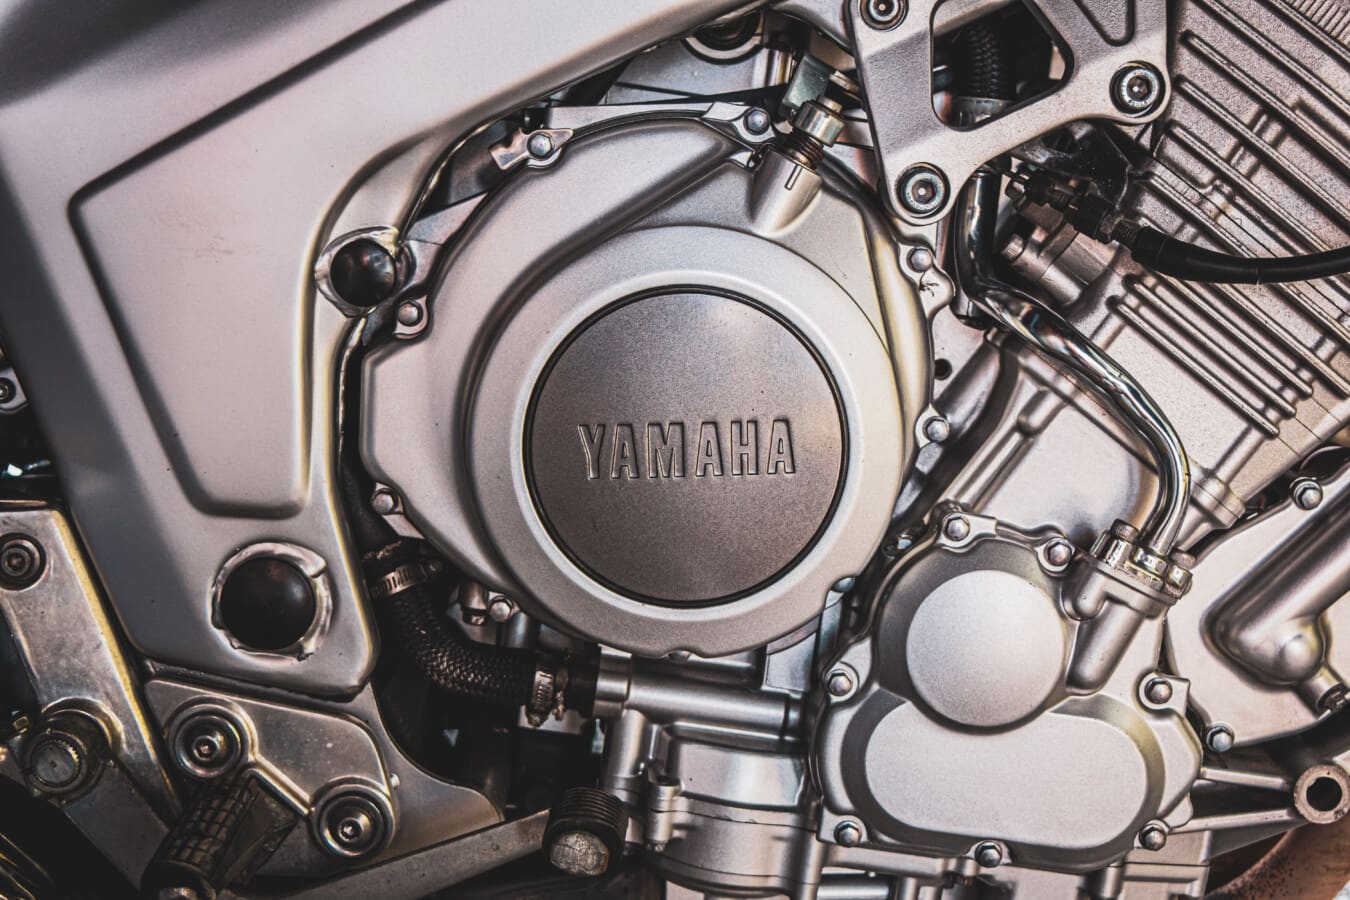 Yamaha, xe gắn máy, động cơ, kim loại, cơ rôm, kỹ thuật, cửa hàng sửa chữa, công nghệ, ngành công nghiệp, thiết bị điện tử